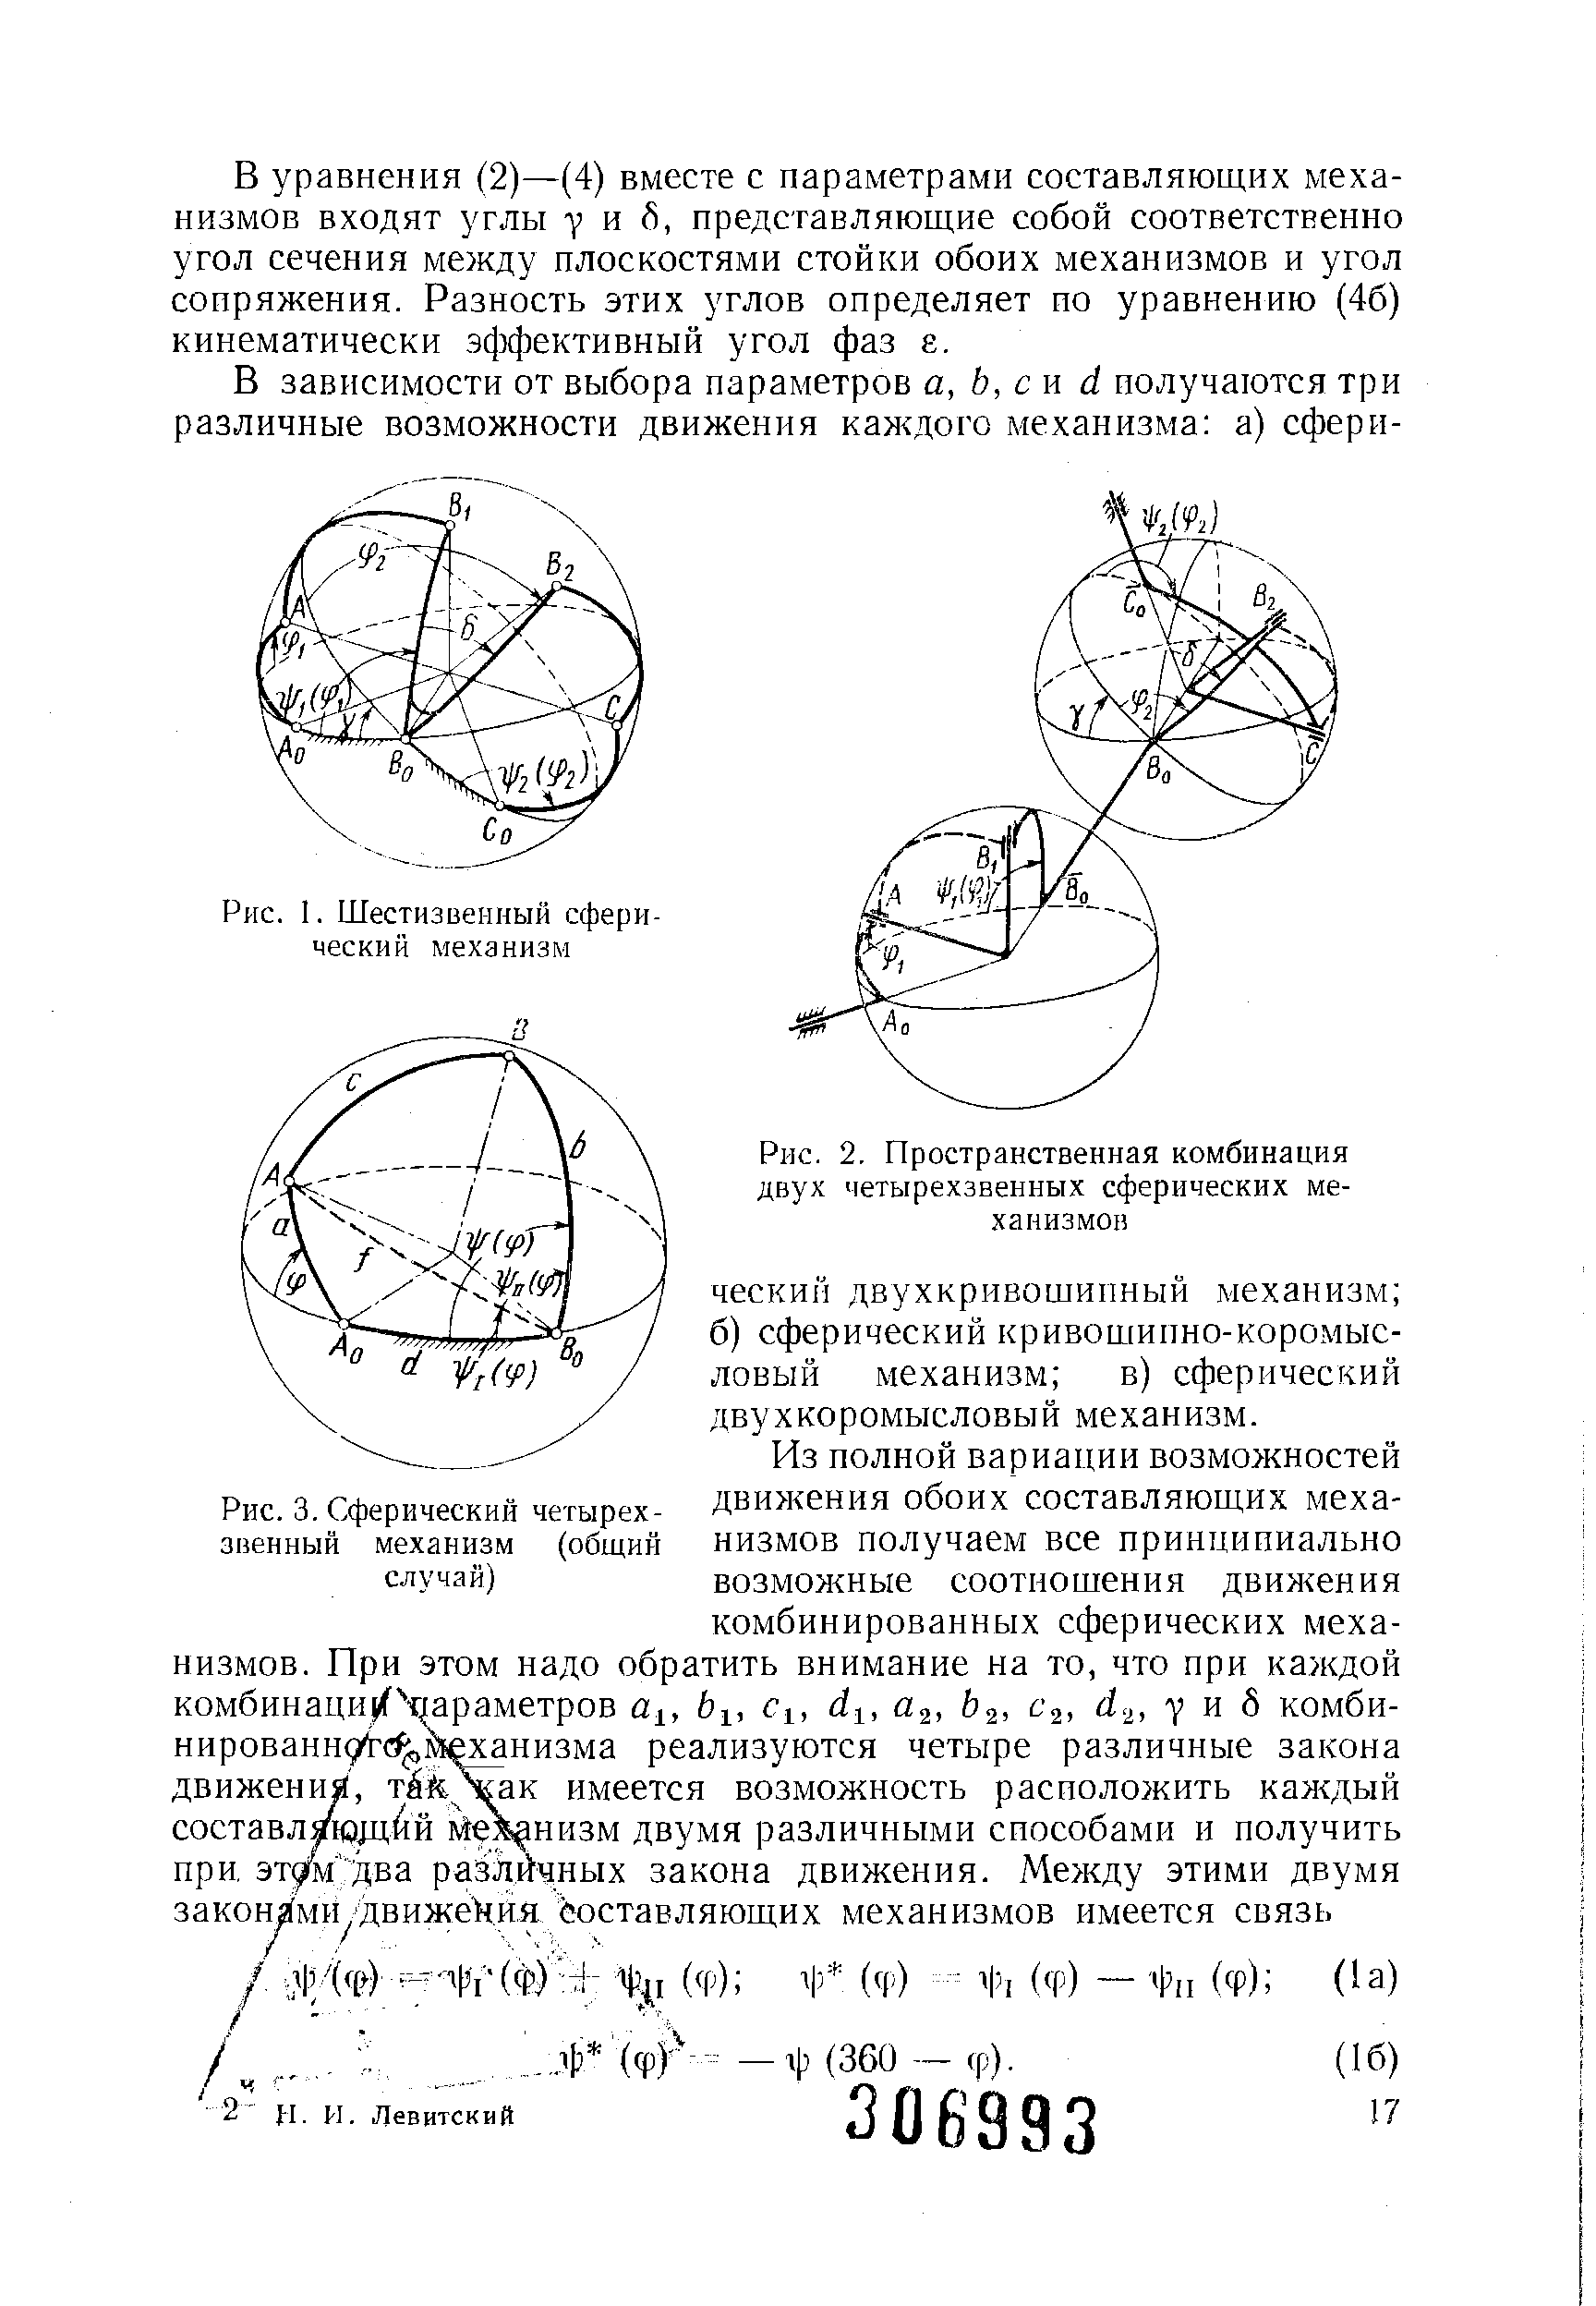 Рис. 2. Пространственная комбинация двух четырехзвенных сферических механизмов
